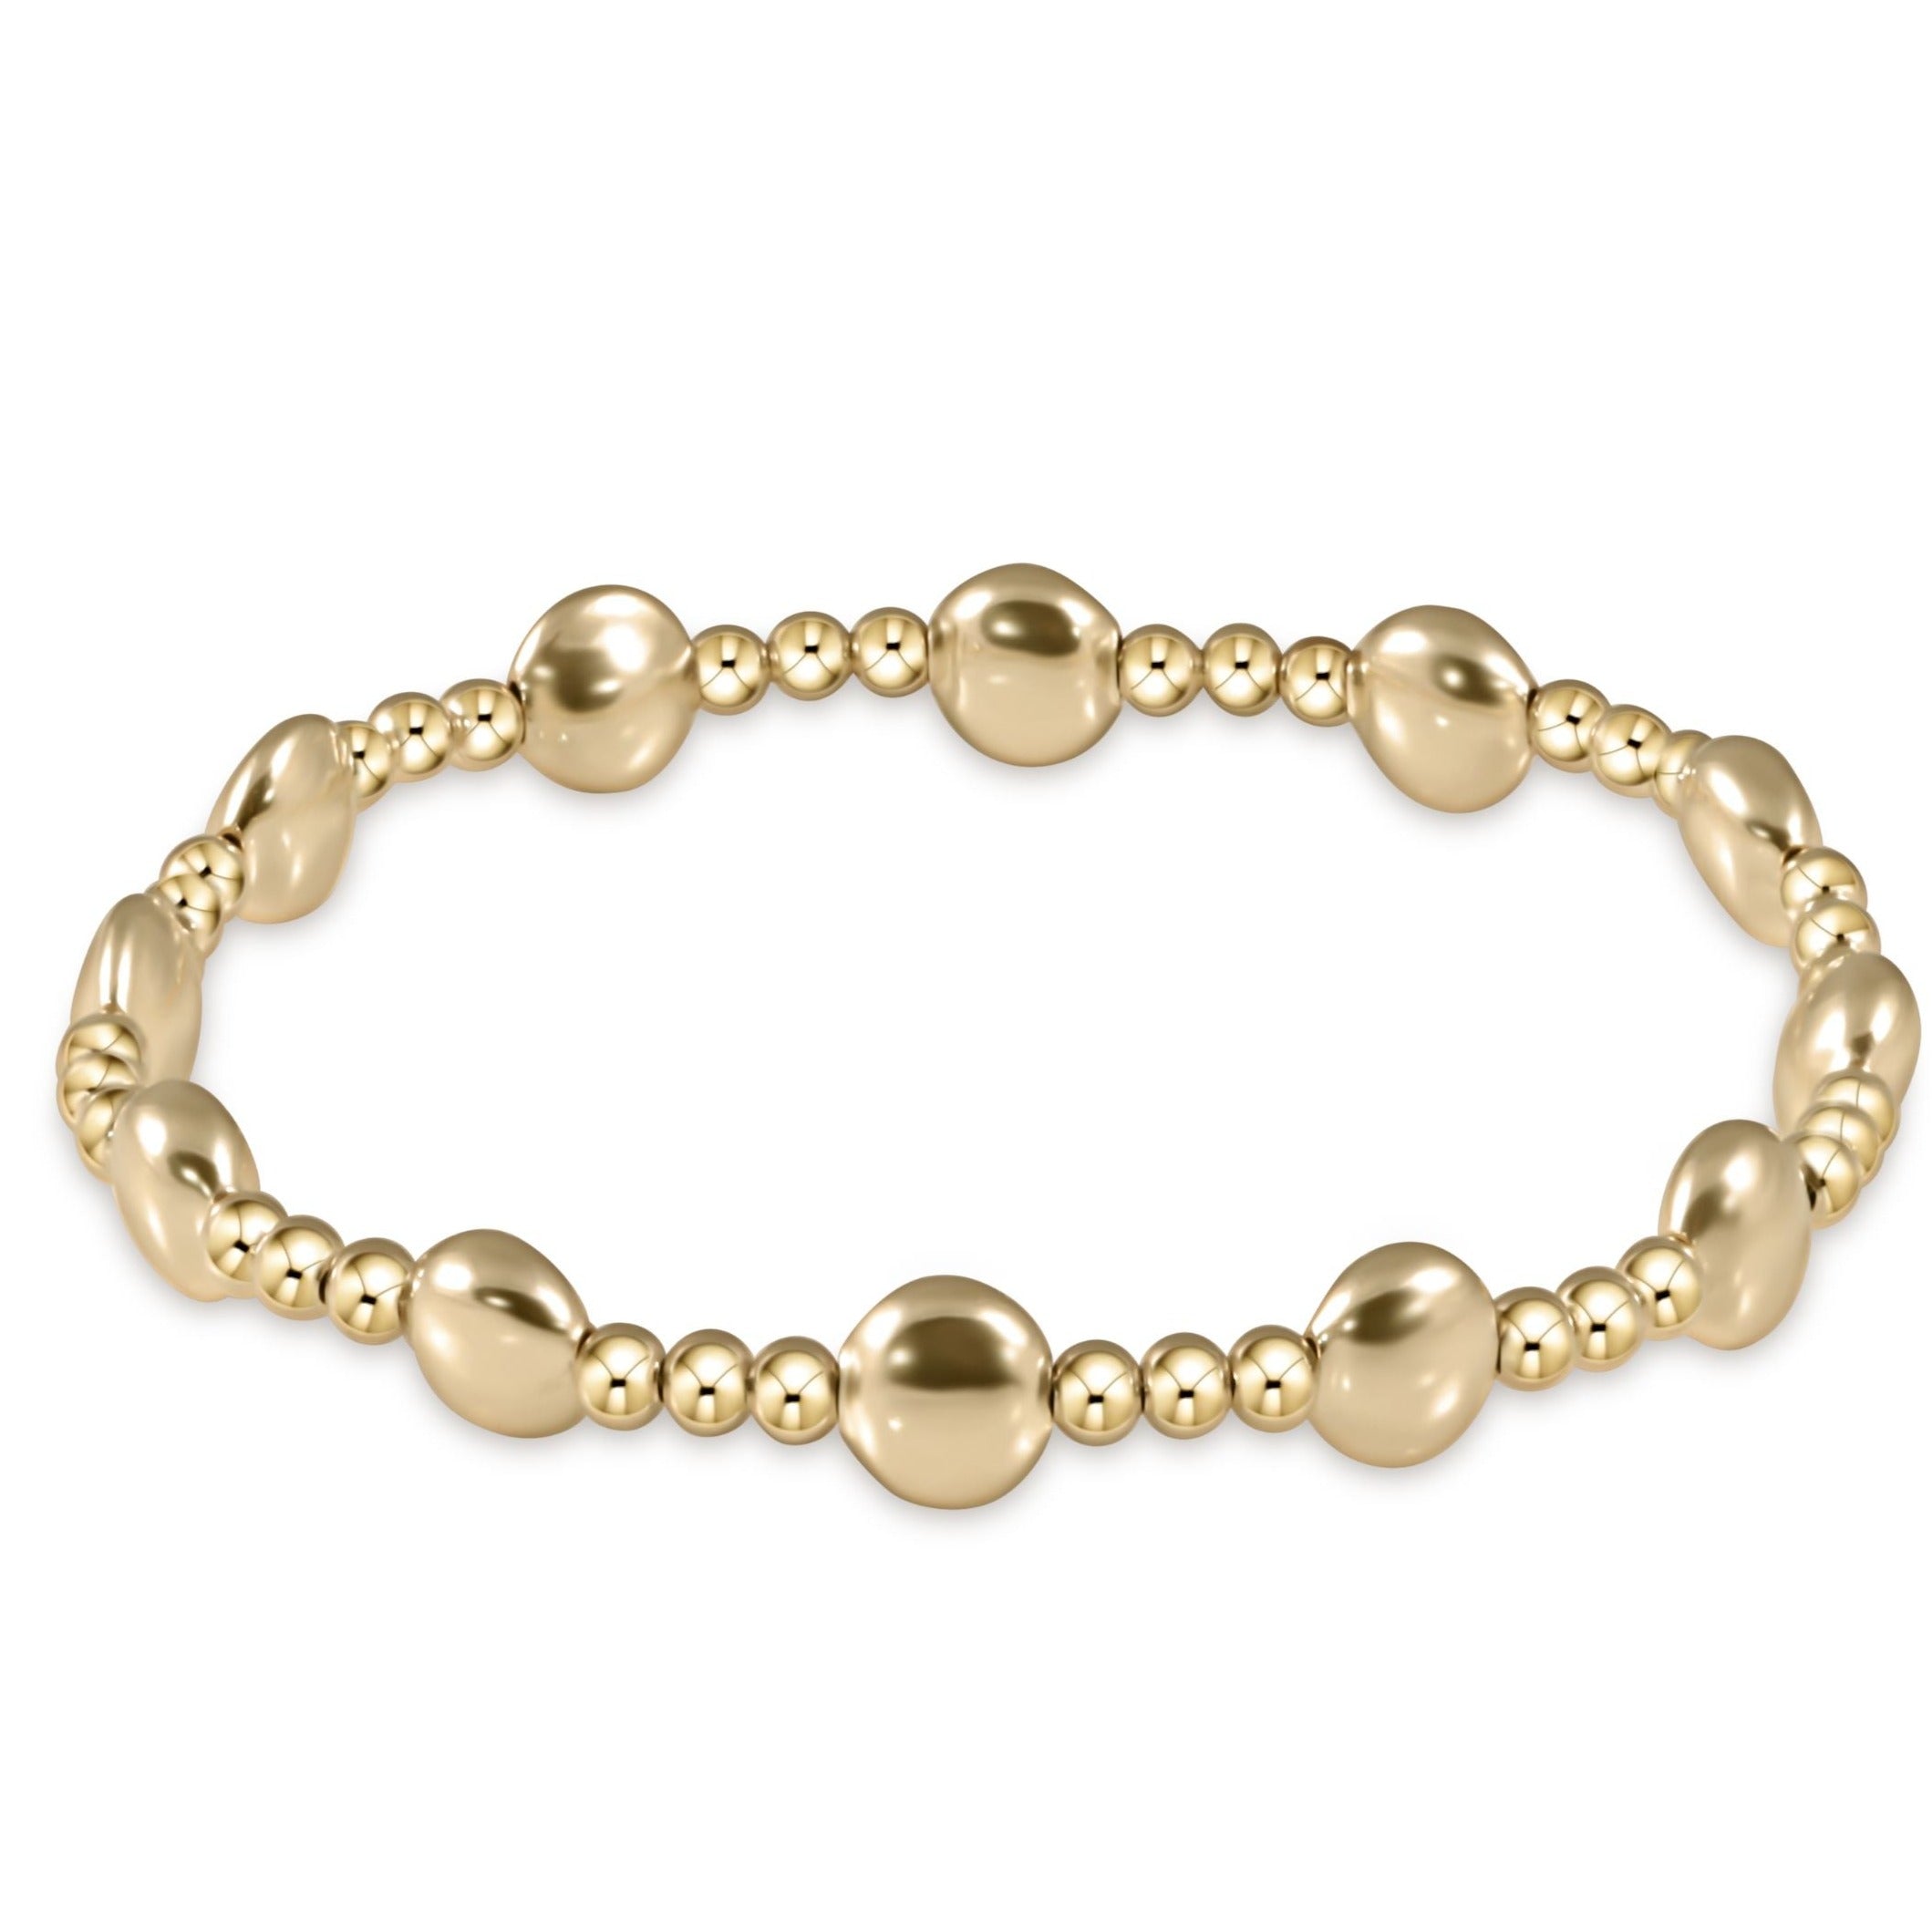 enewton extends - honesty gold sincerity pattern 6mm bead bracelet